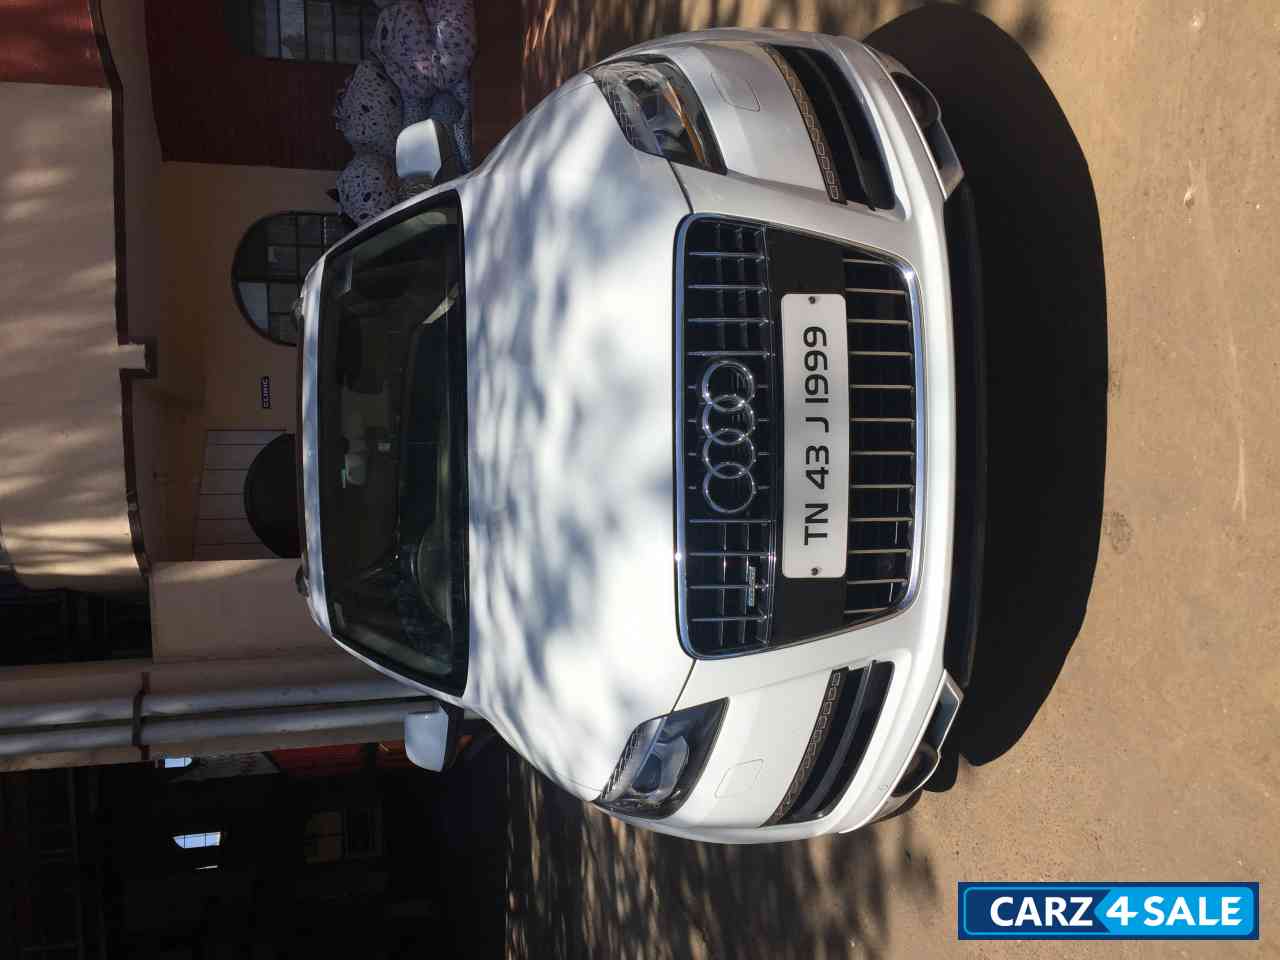 Carrara White Audi Q7 3.0 TDI quattro Premium